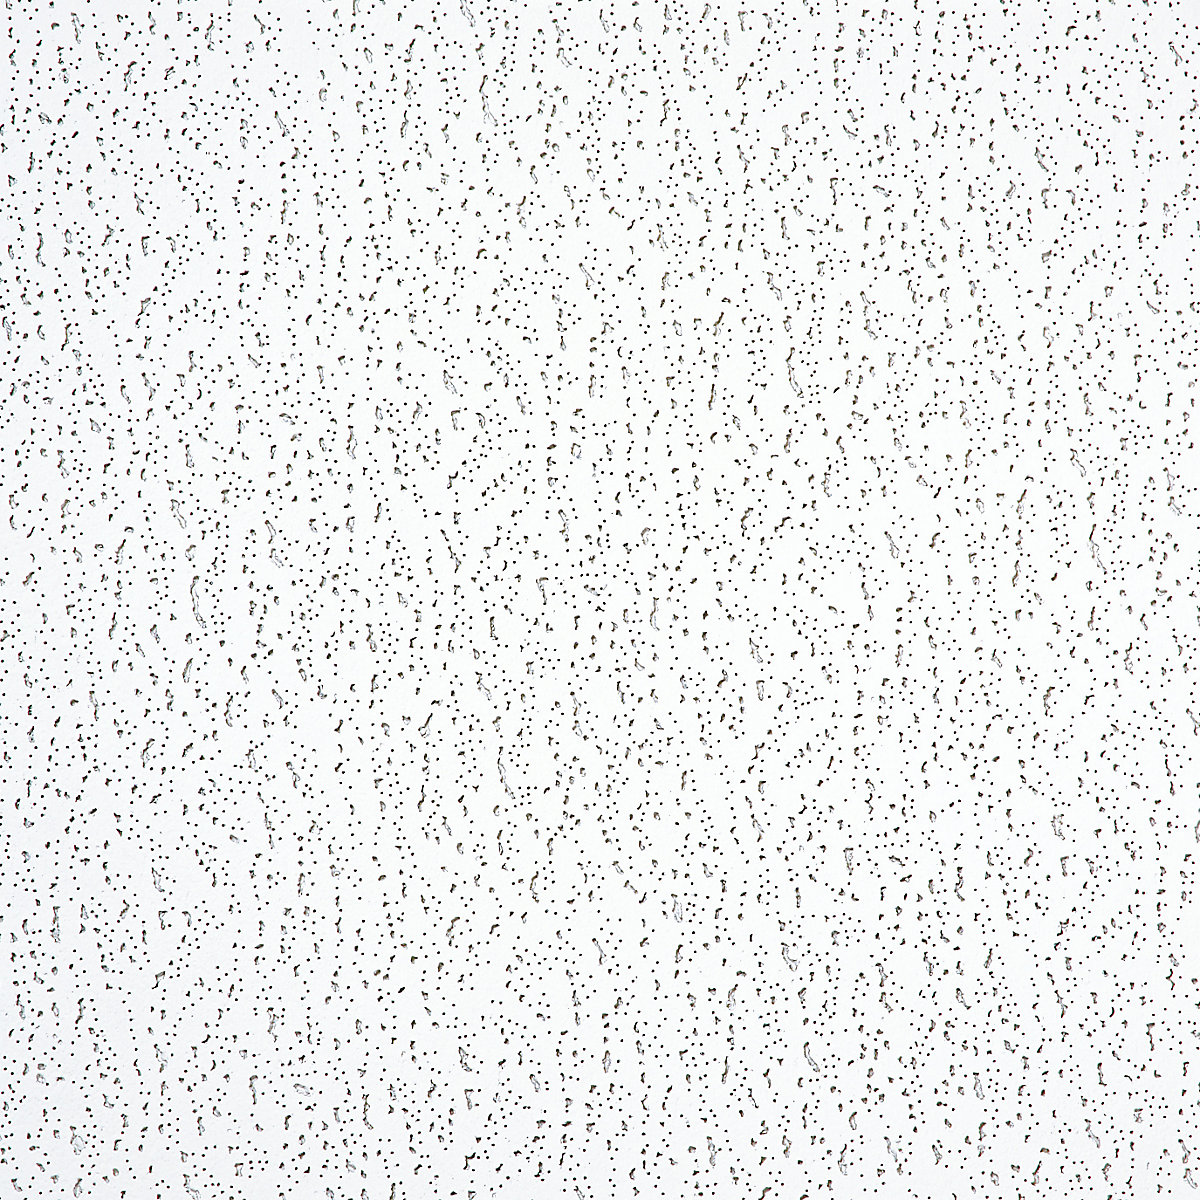 Elementos de teto com placas de fibra mineral brancas inseridas